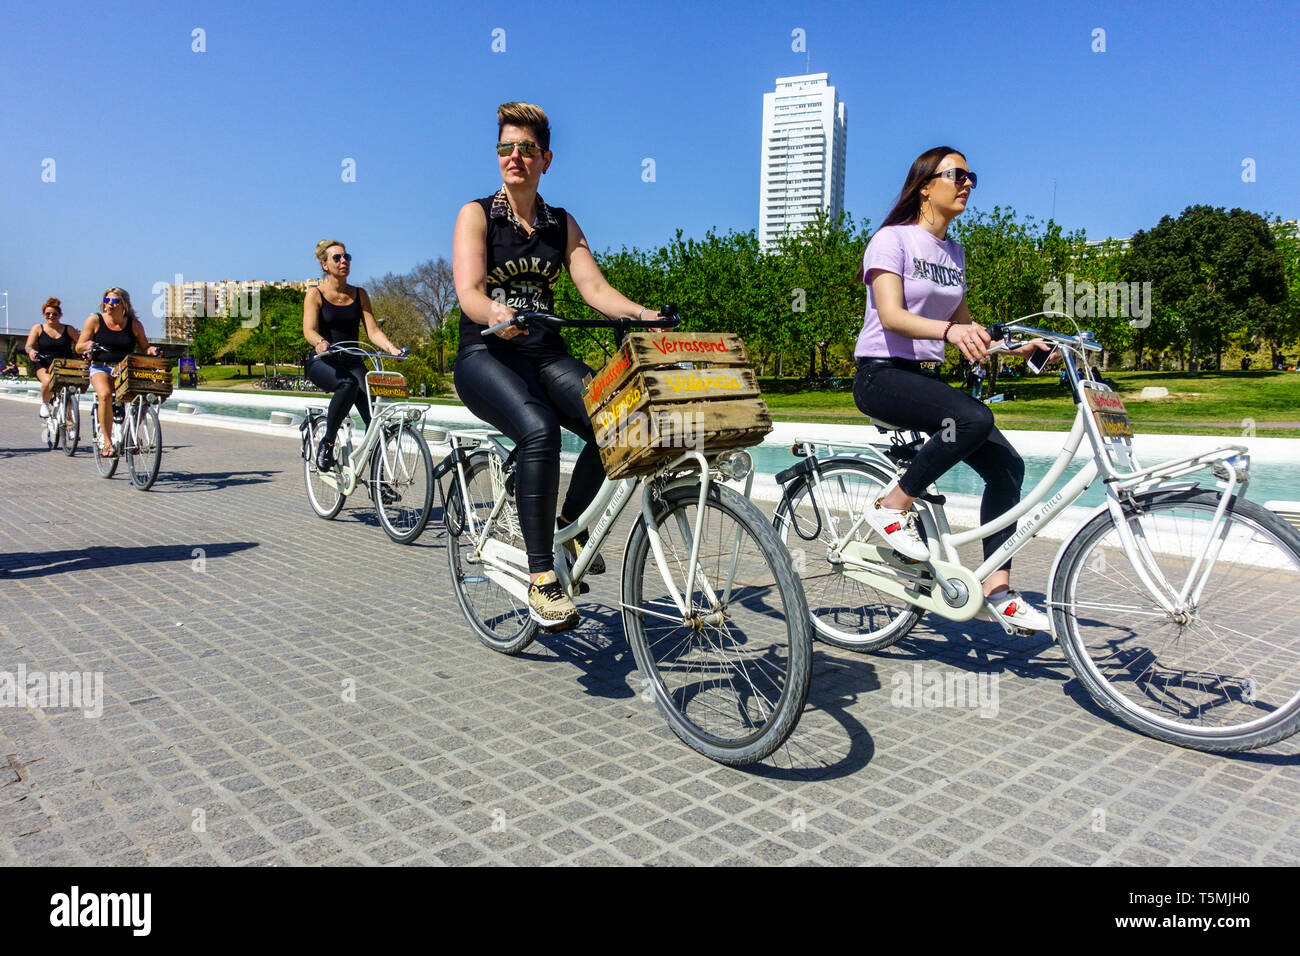 Les touristes font du vélo sur un vélo de location, les femmes font du vélo sur une piste cyclable à Valence Turia Park Espagne Bicycle City Europe piste cyclable Banque D'Images